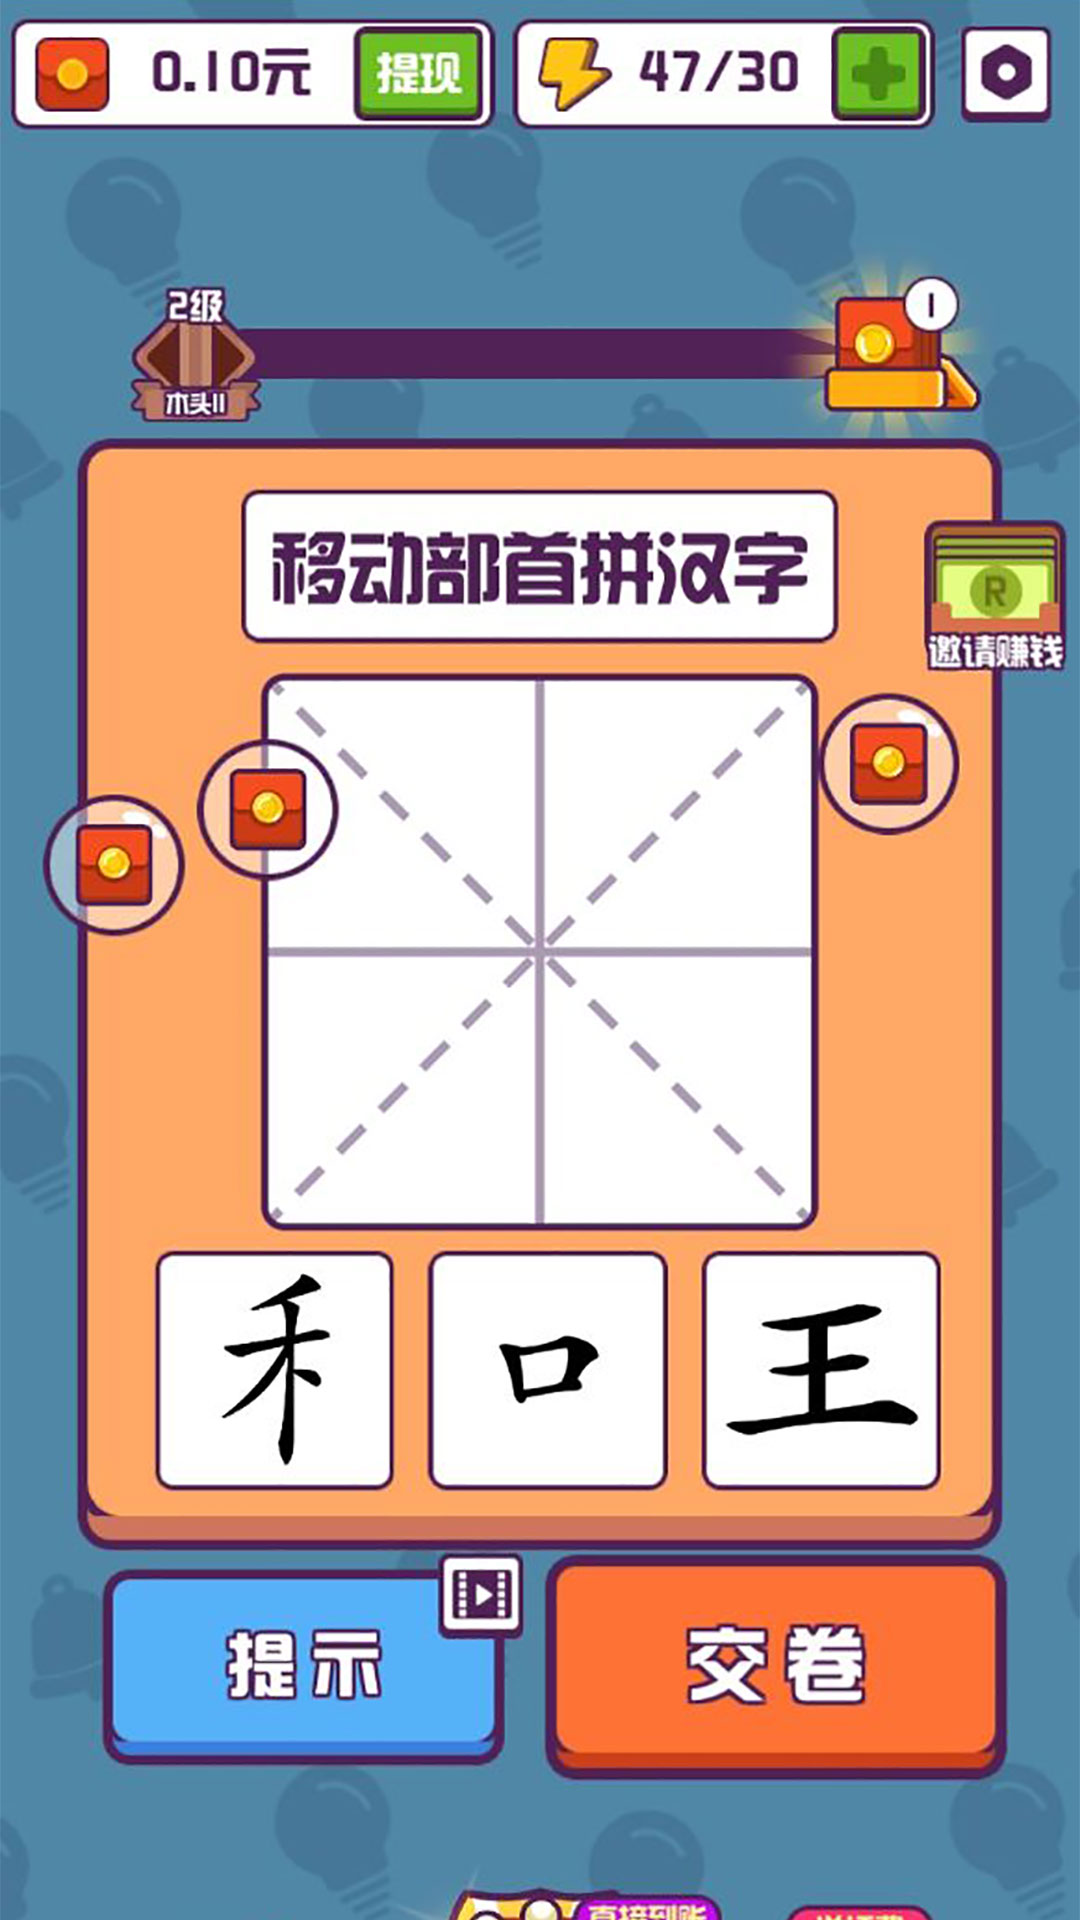 有趣的汉字游戏首充激活码,怎样充值最划算的礼包